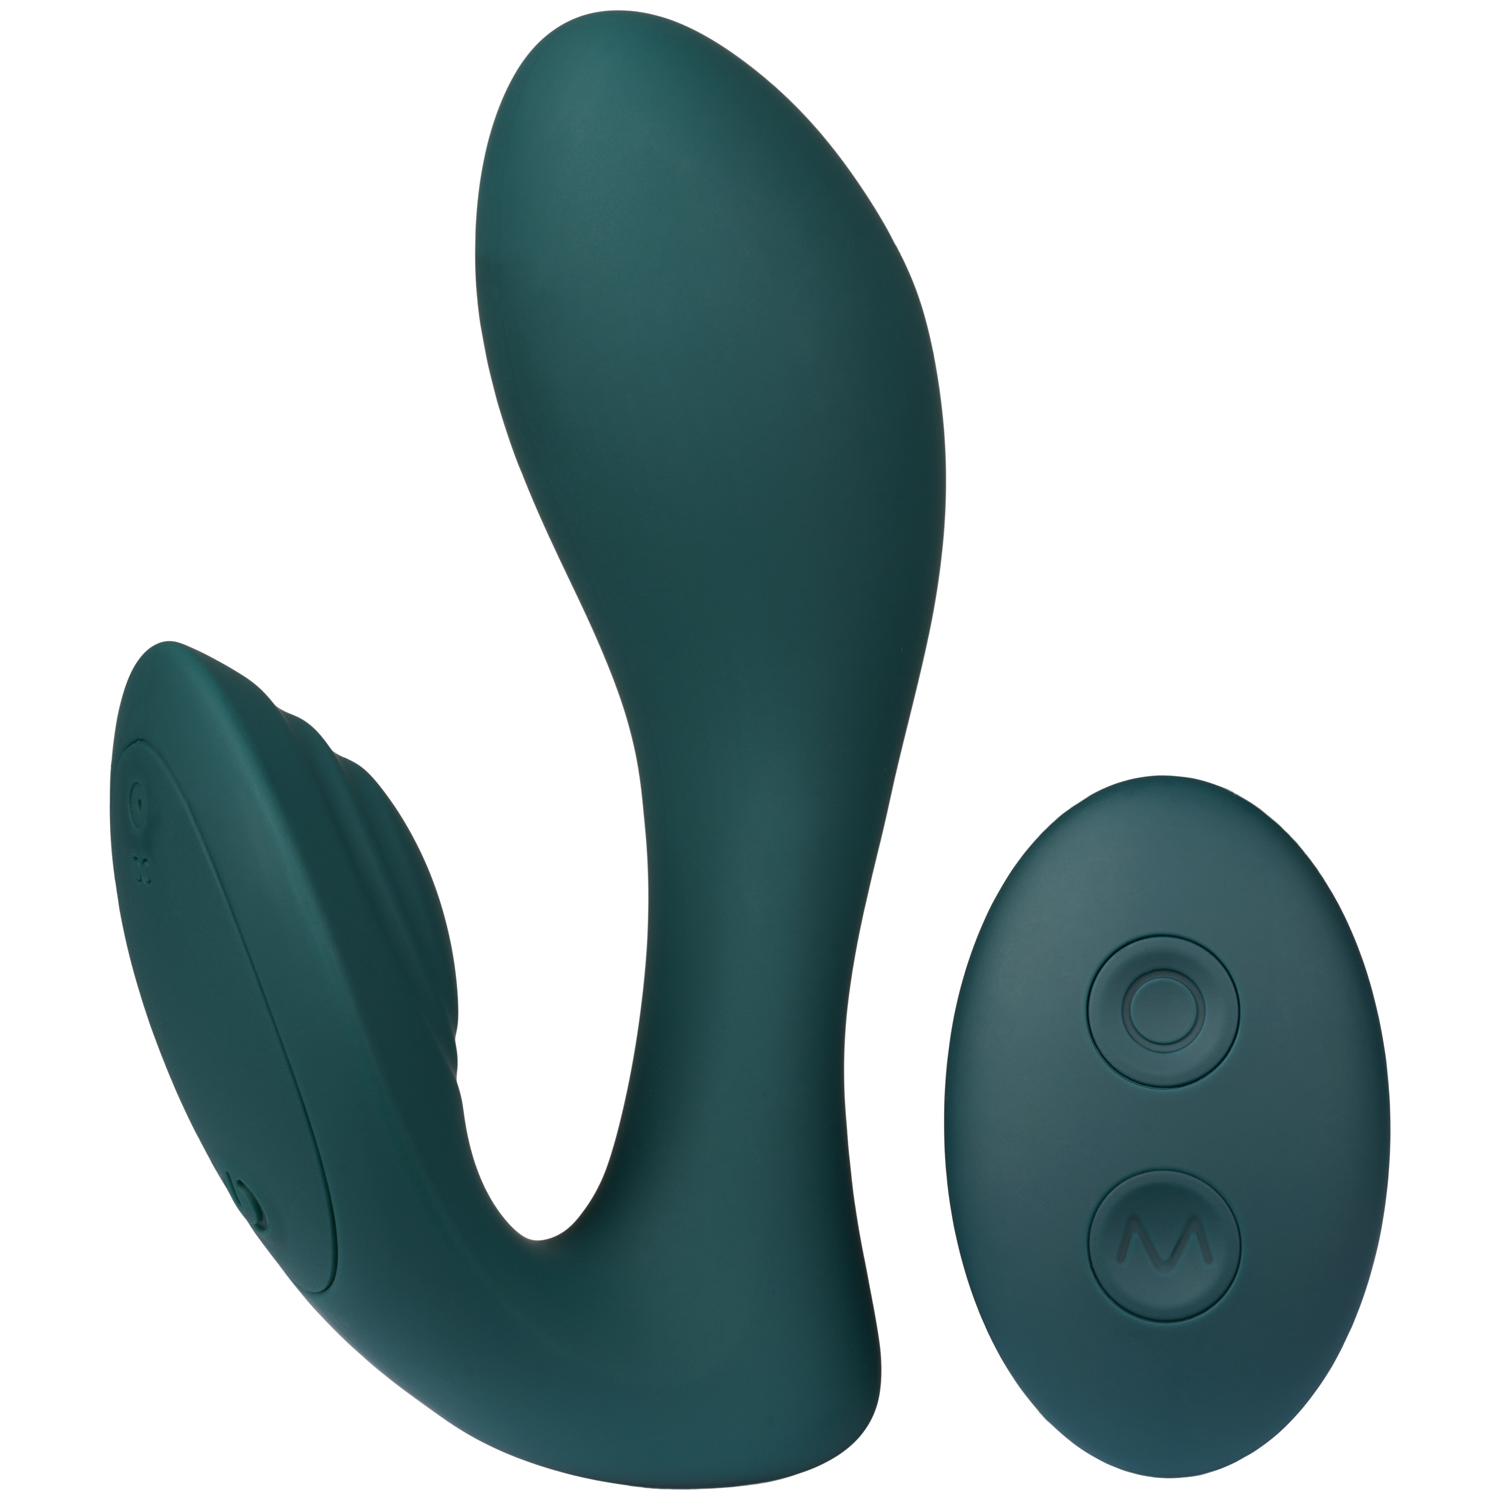 Amaysin G-punkts og Klitoris Vibrator med Fjernbetjening    - Grøn thumbnail